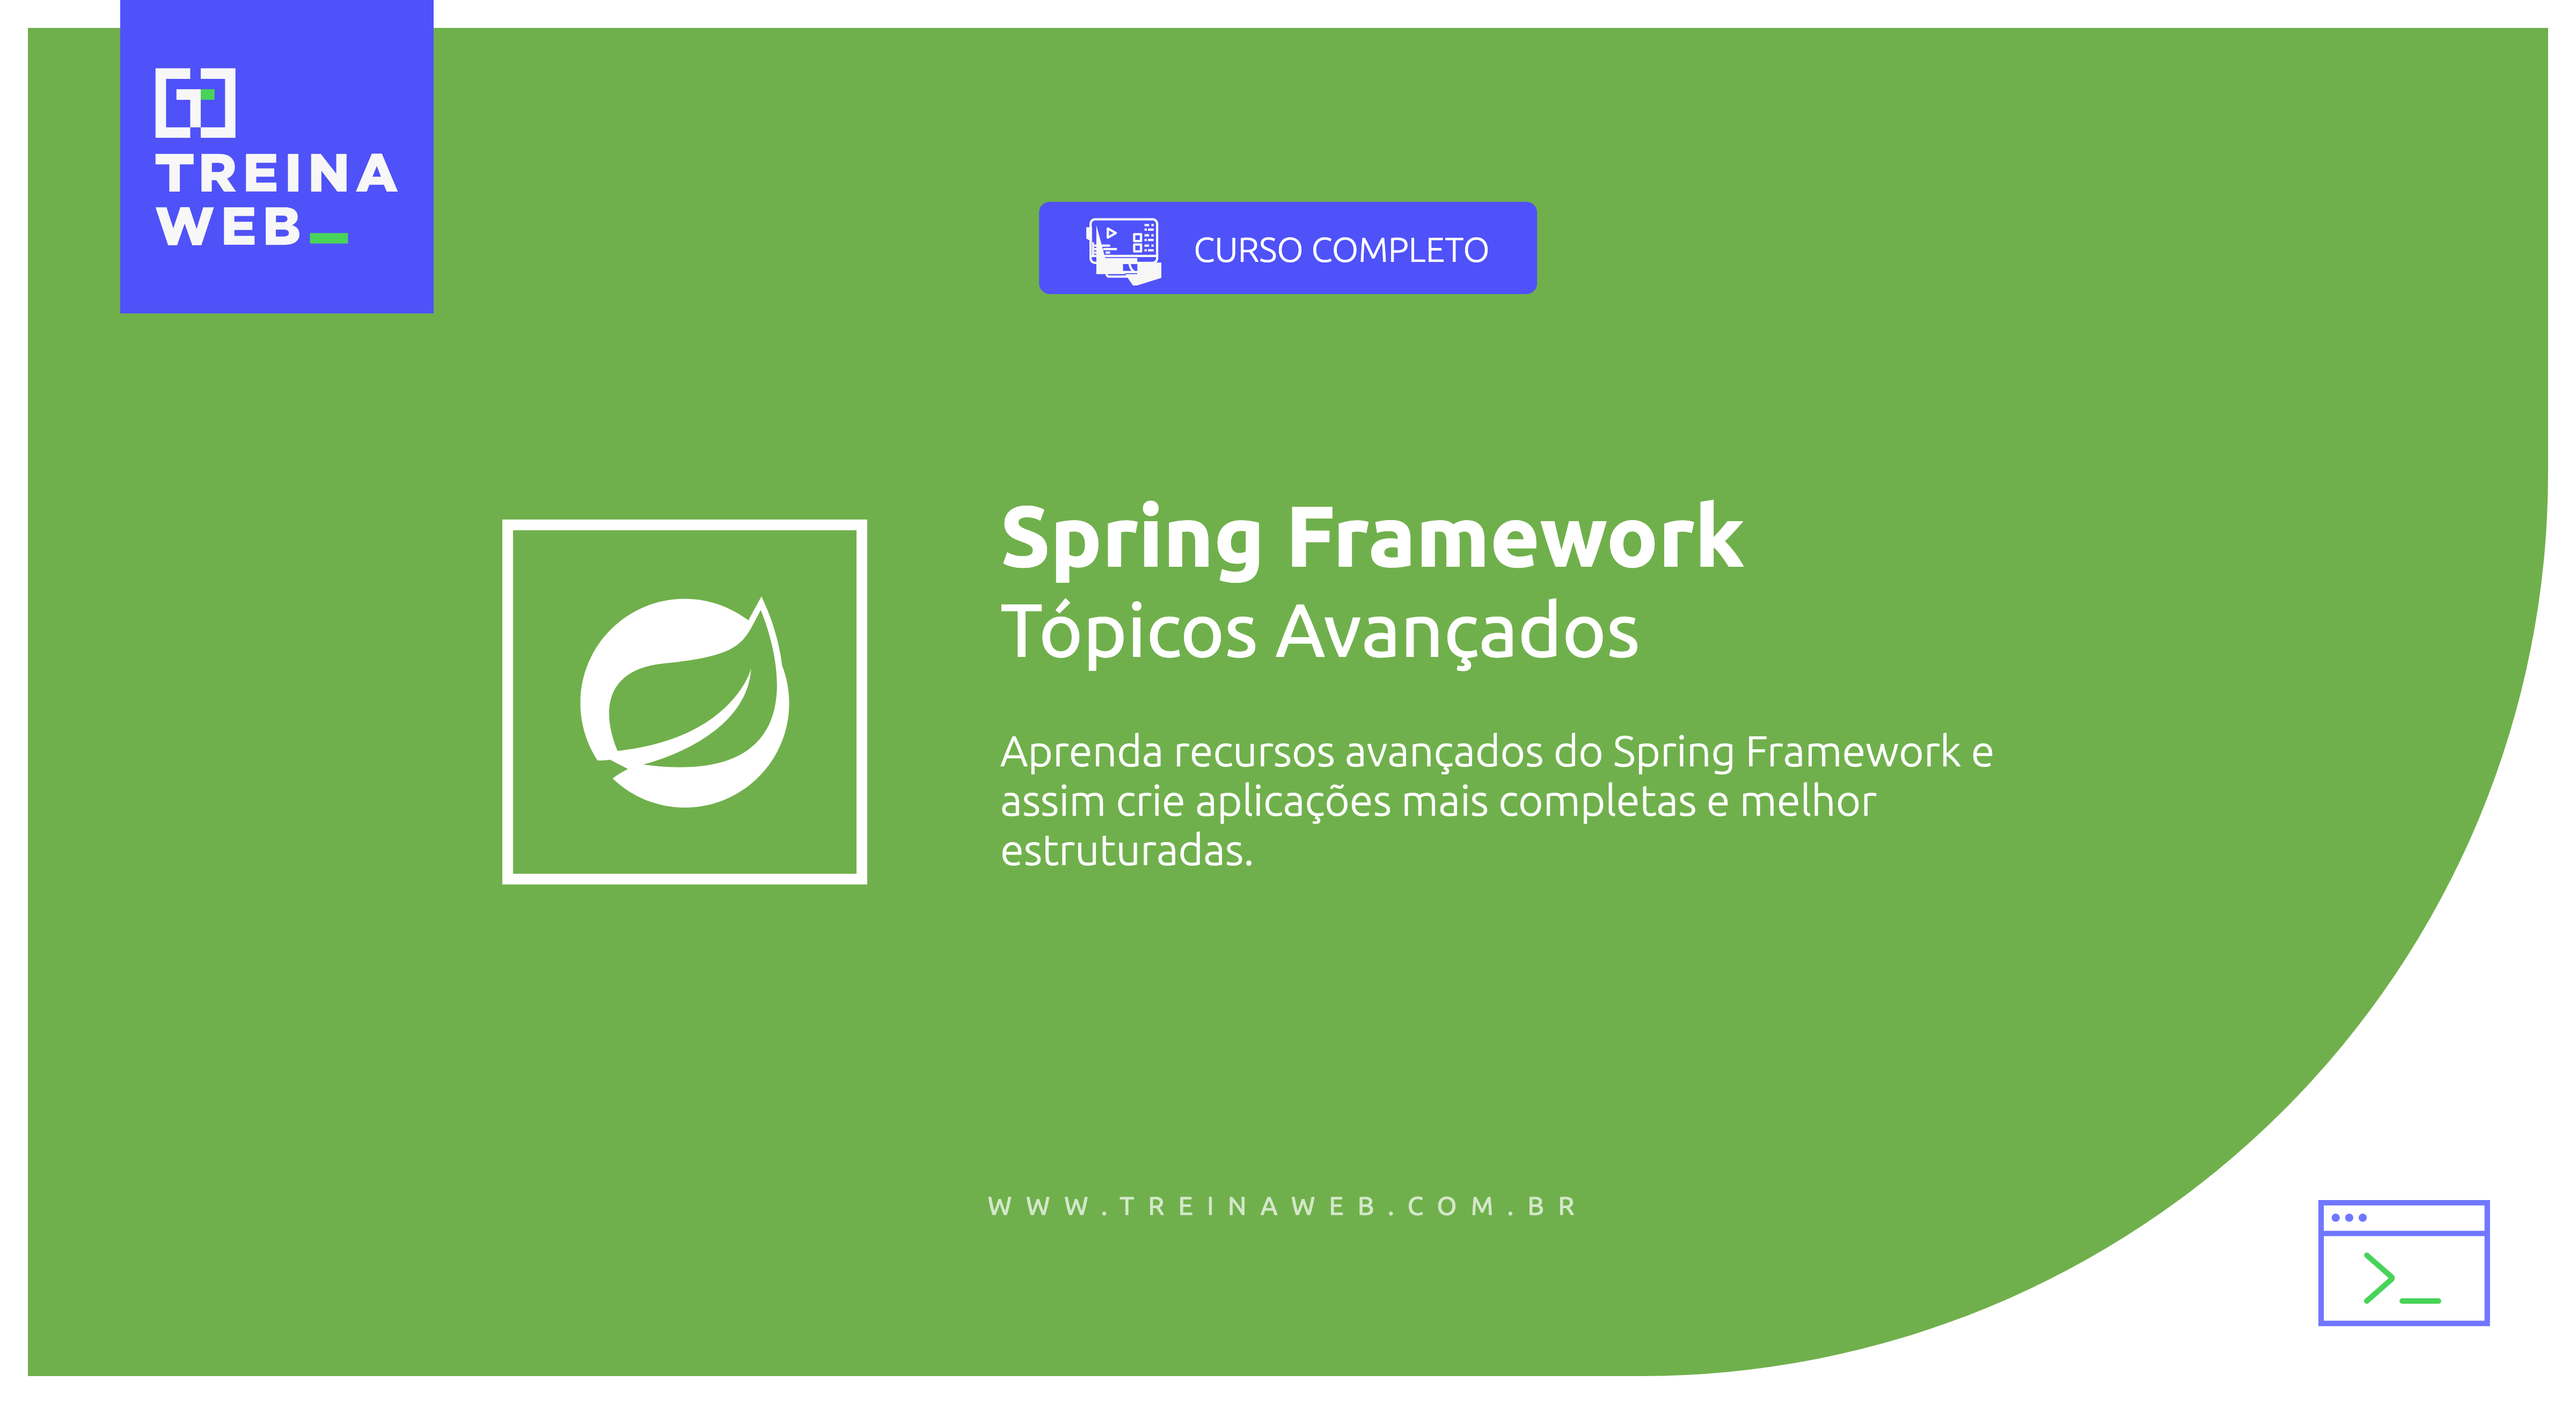 Imagem ilustrativa do curso Spring Framework - Tópicos Avançados